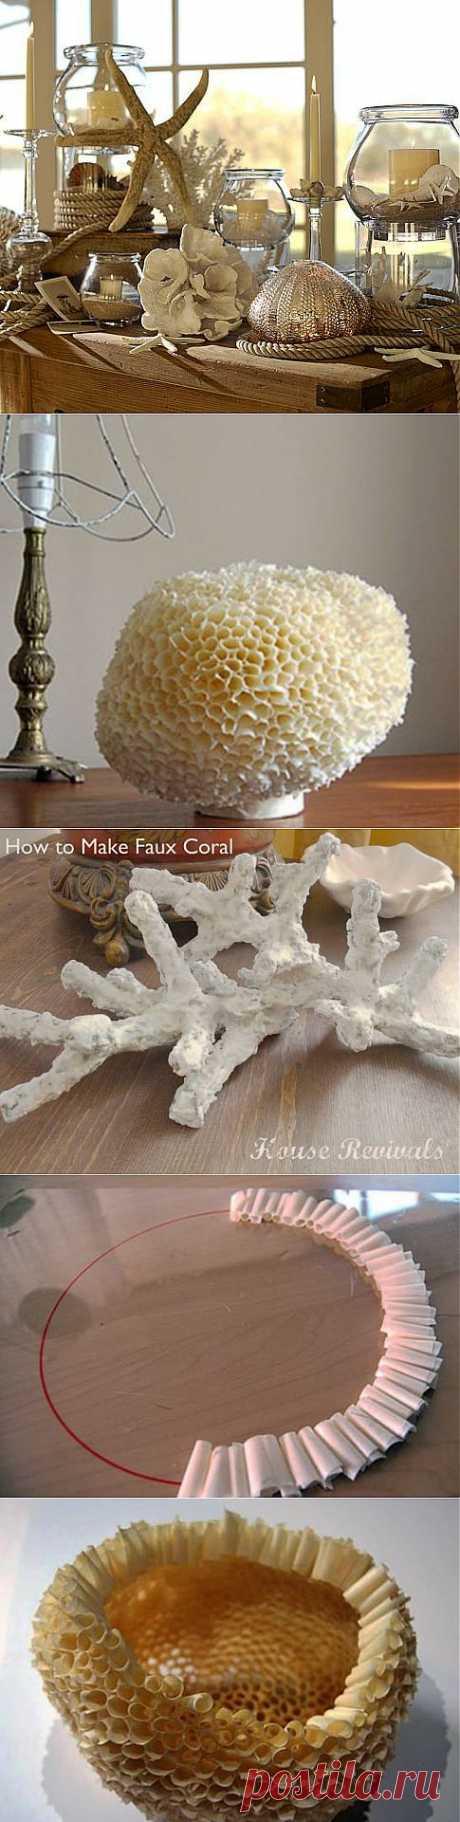 Морская губка и кораллы своими руками для украшения интерьера в морском стиле | Самоделкино